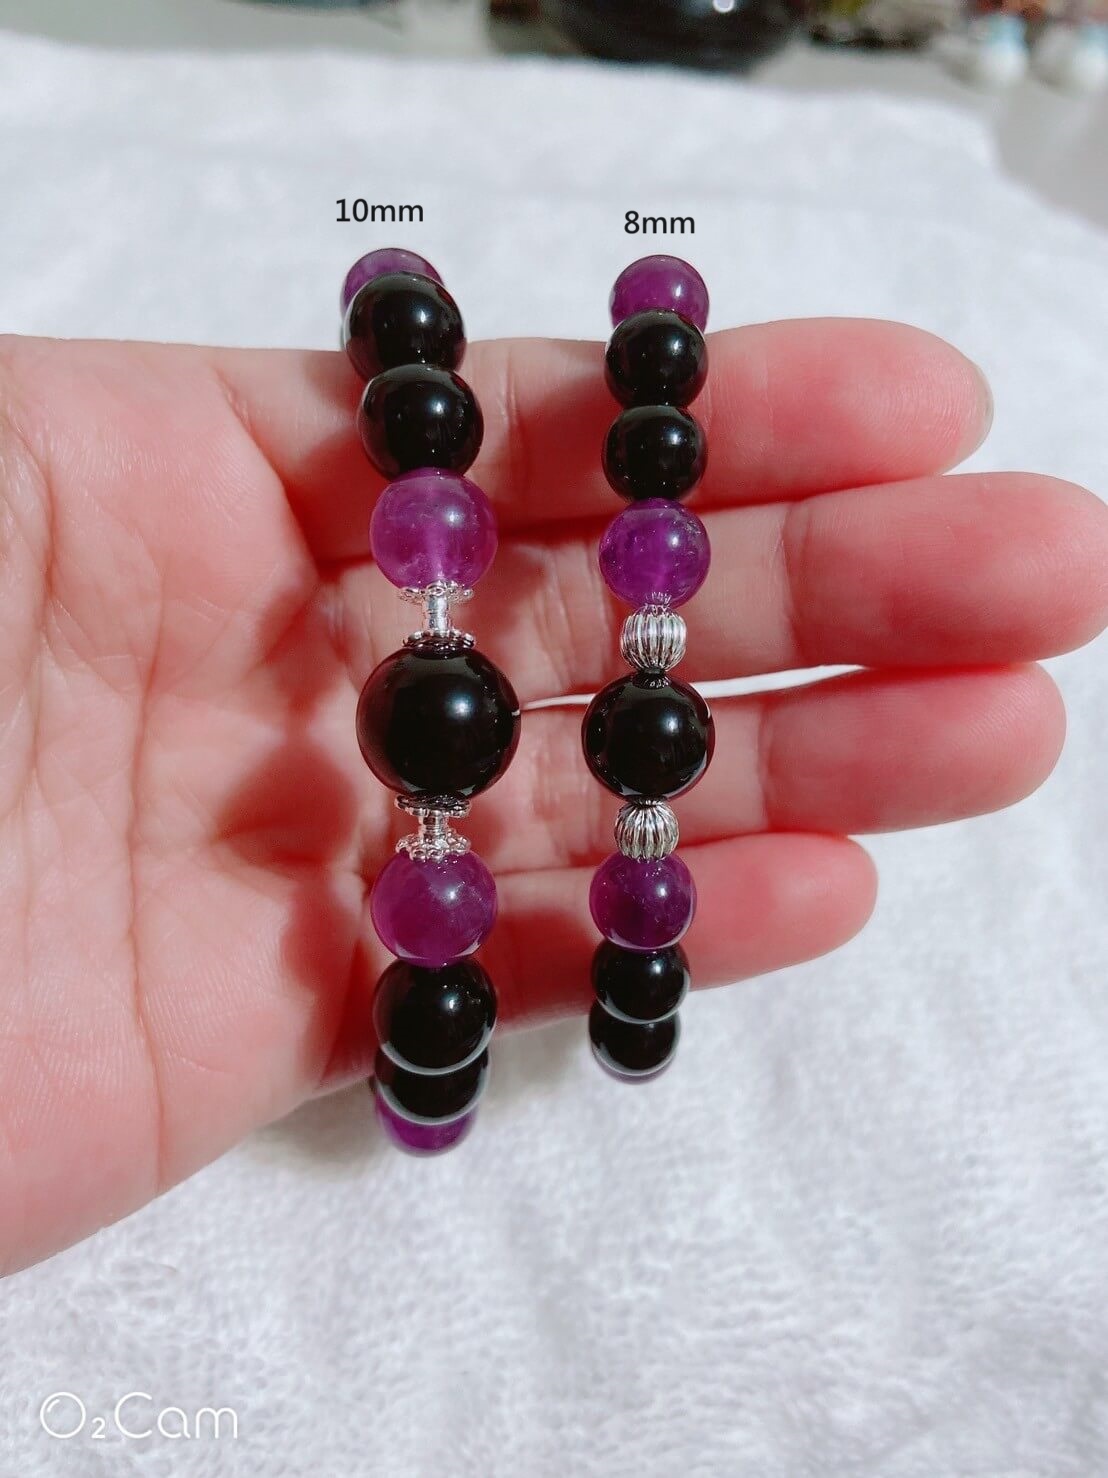 天然紫水晶、黑曜石念珠手鍊